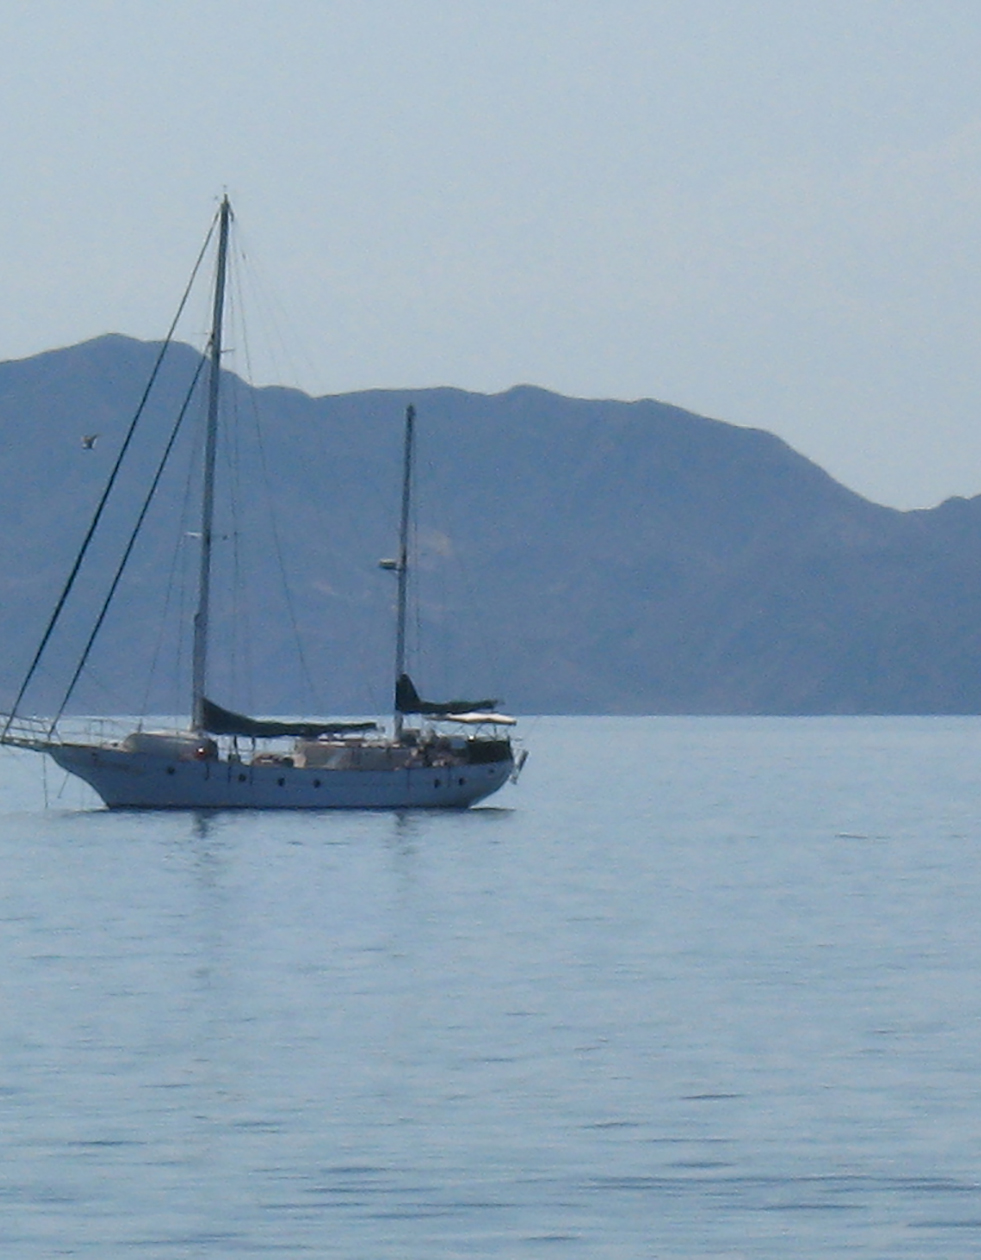 Anchored off Loreto, the Sea of Cortez